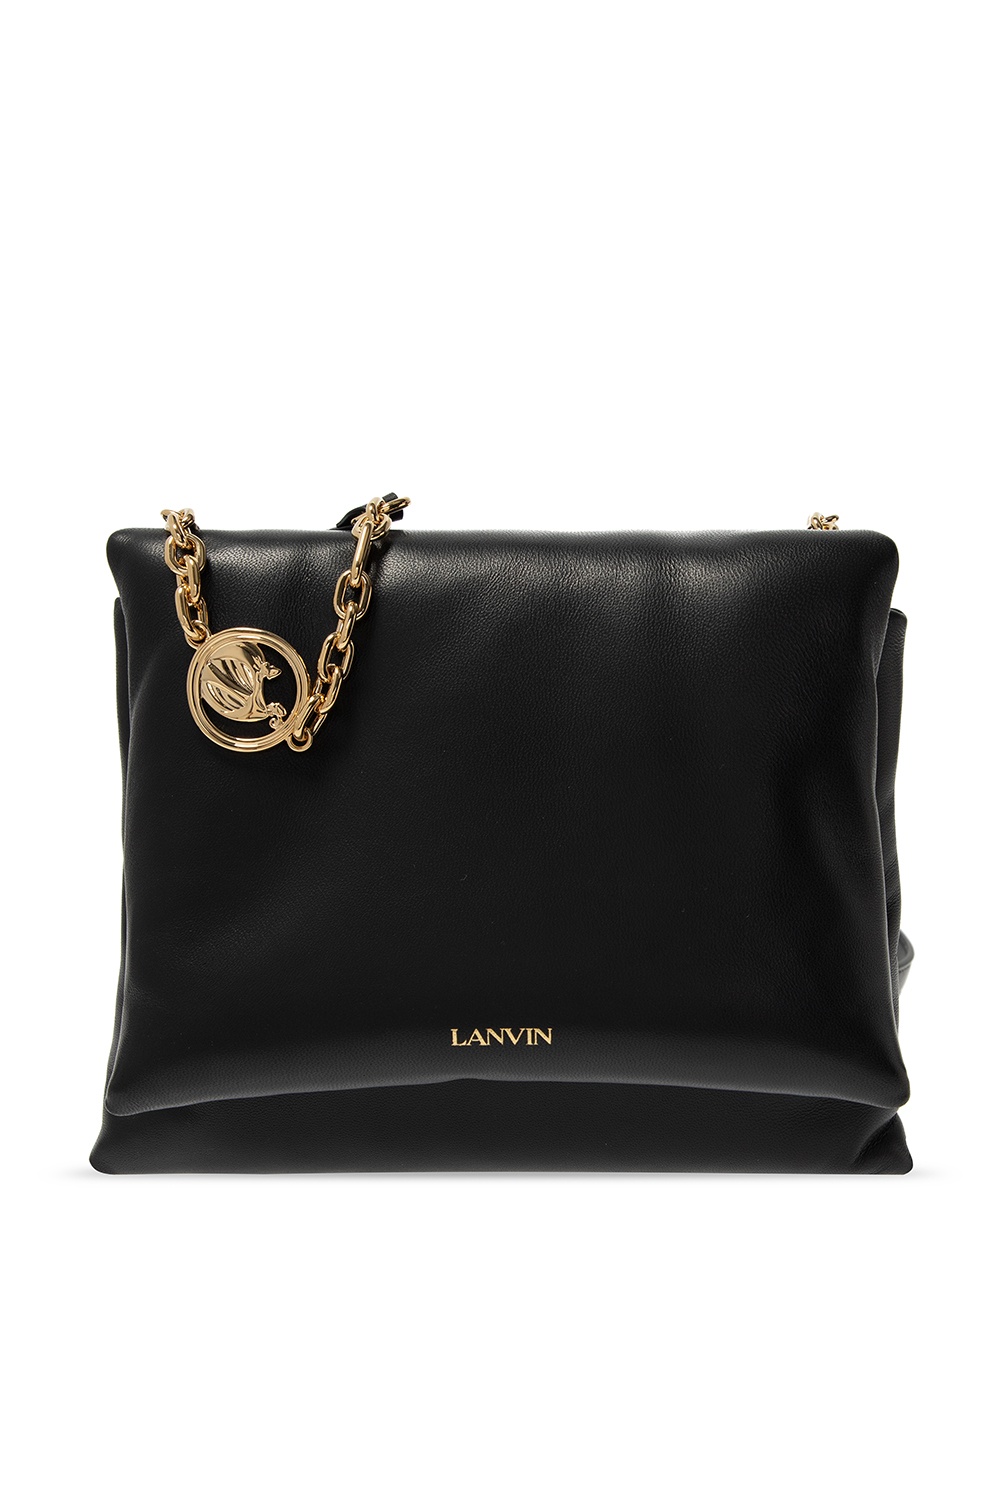 Lanvin ‘Sugar’ shoulder version bag